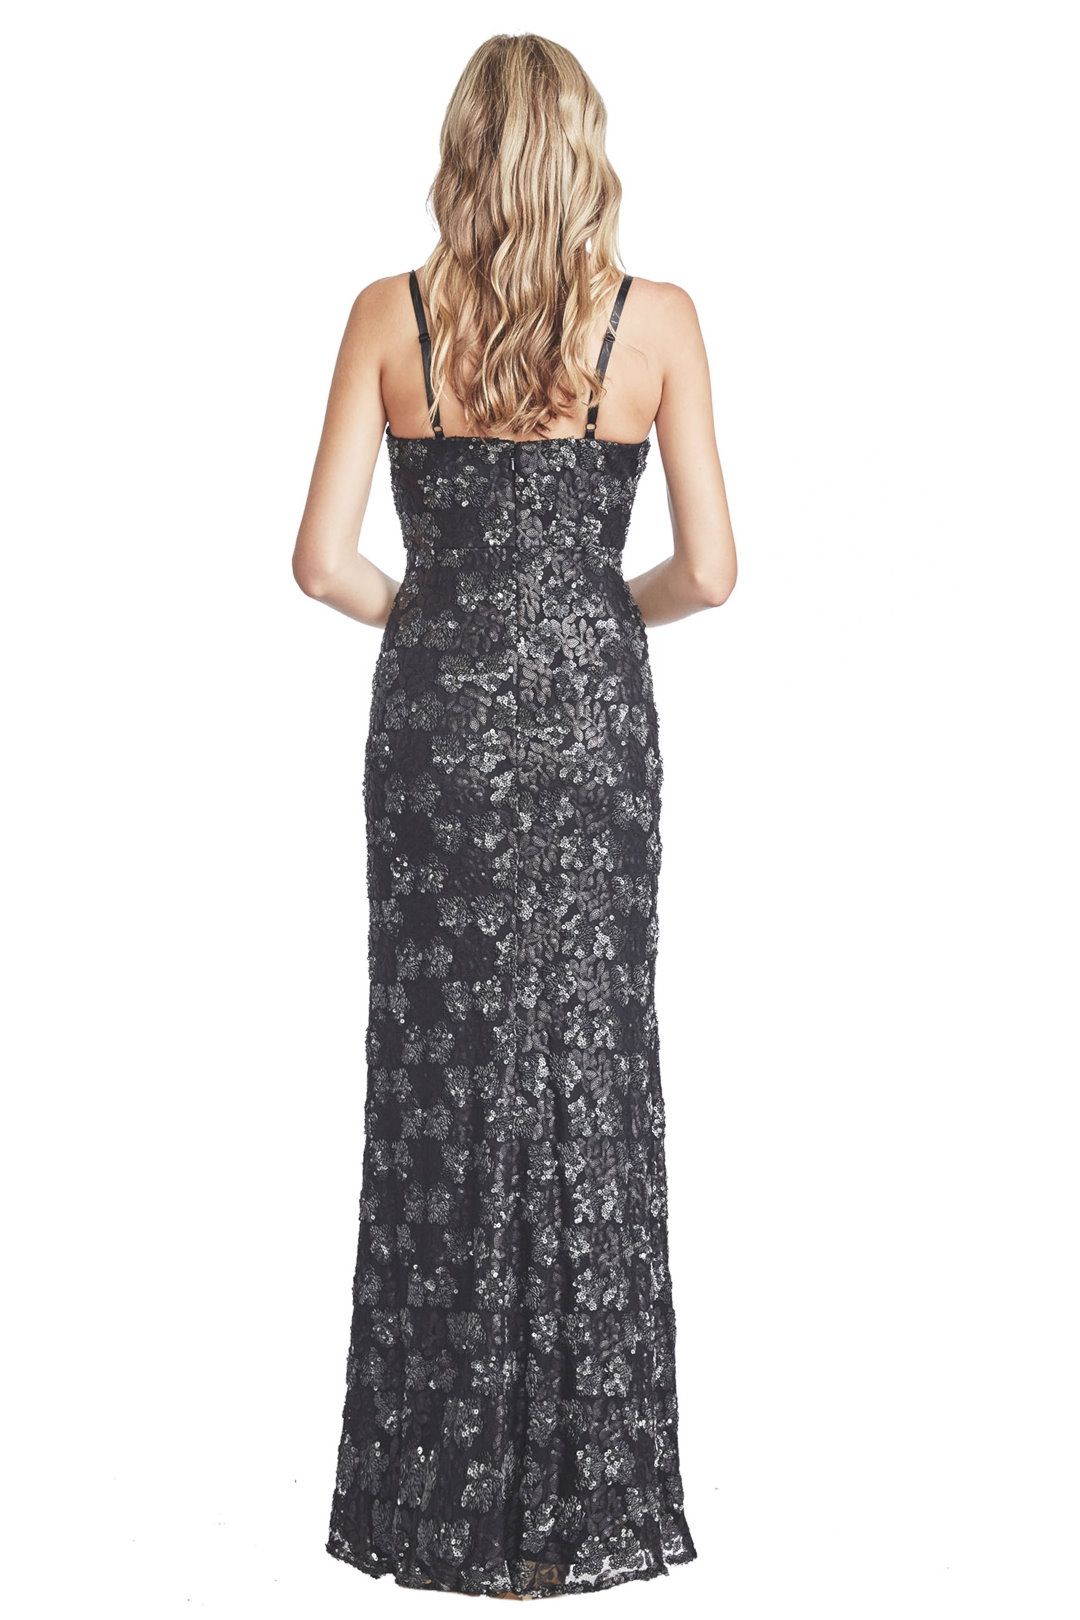 Langhem - Taylor Evening Black Sequin Gown - Black - Back